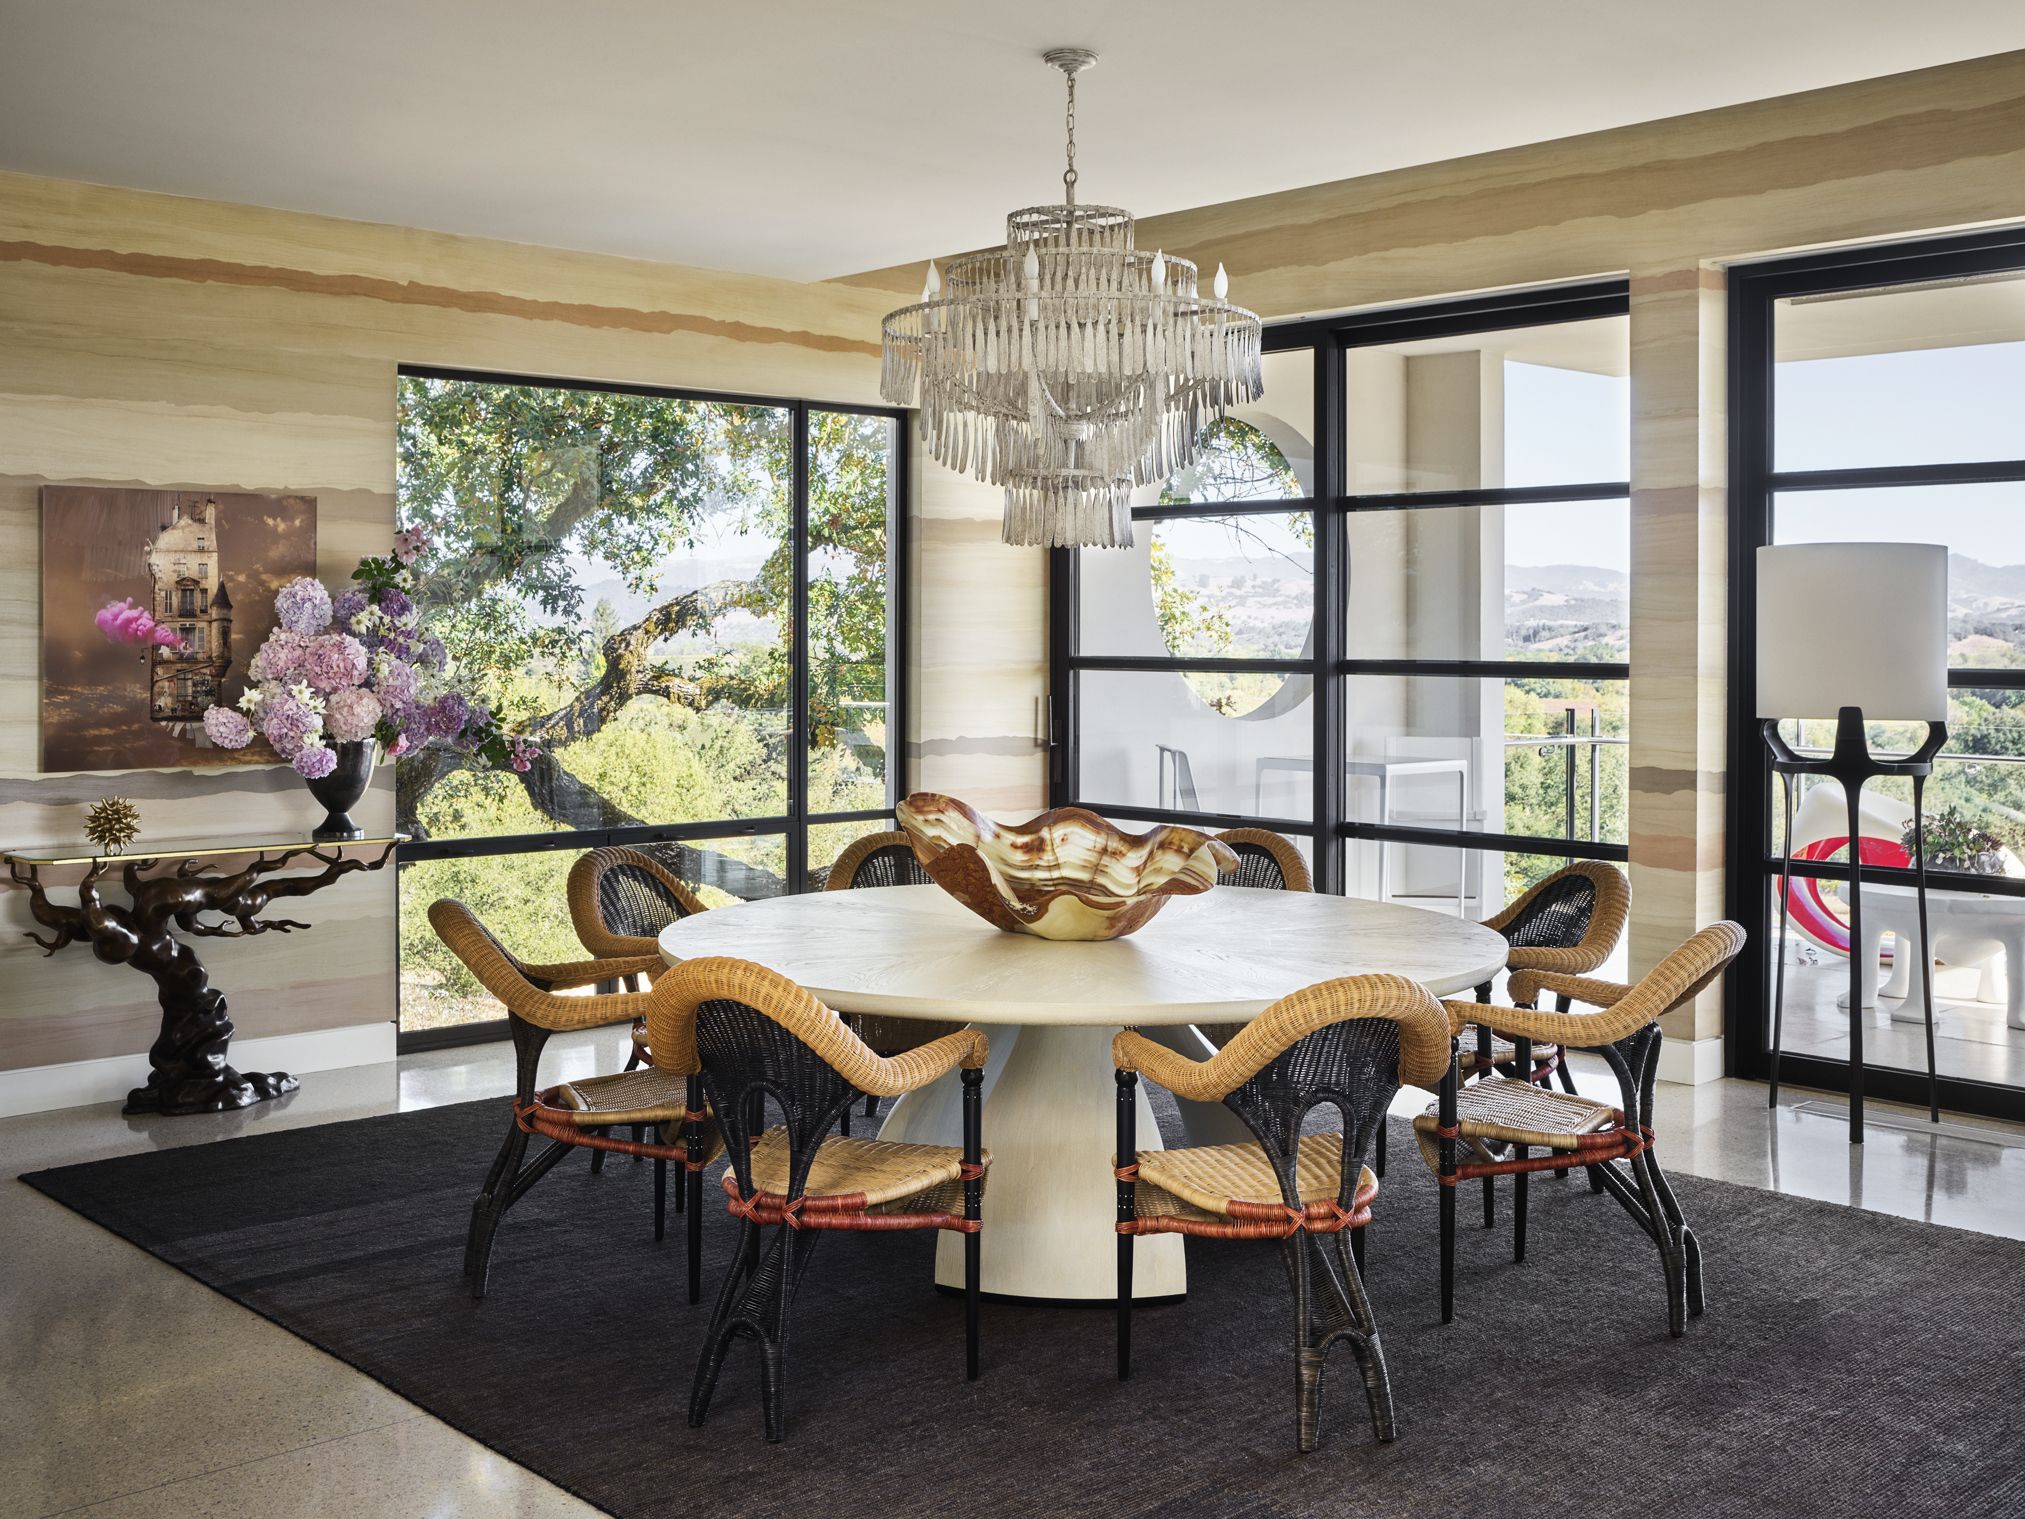 50 Best Dining Room Ideas Designer, Round Formal Dining Room Sets For 8